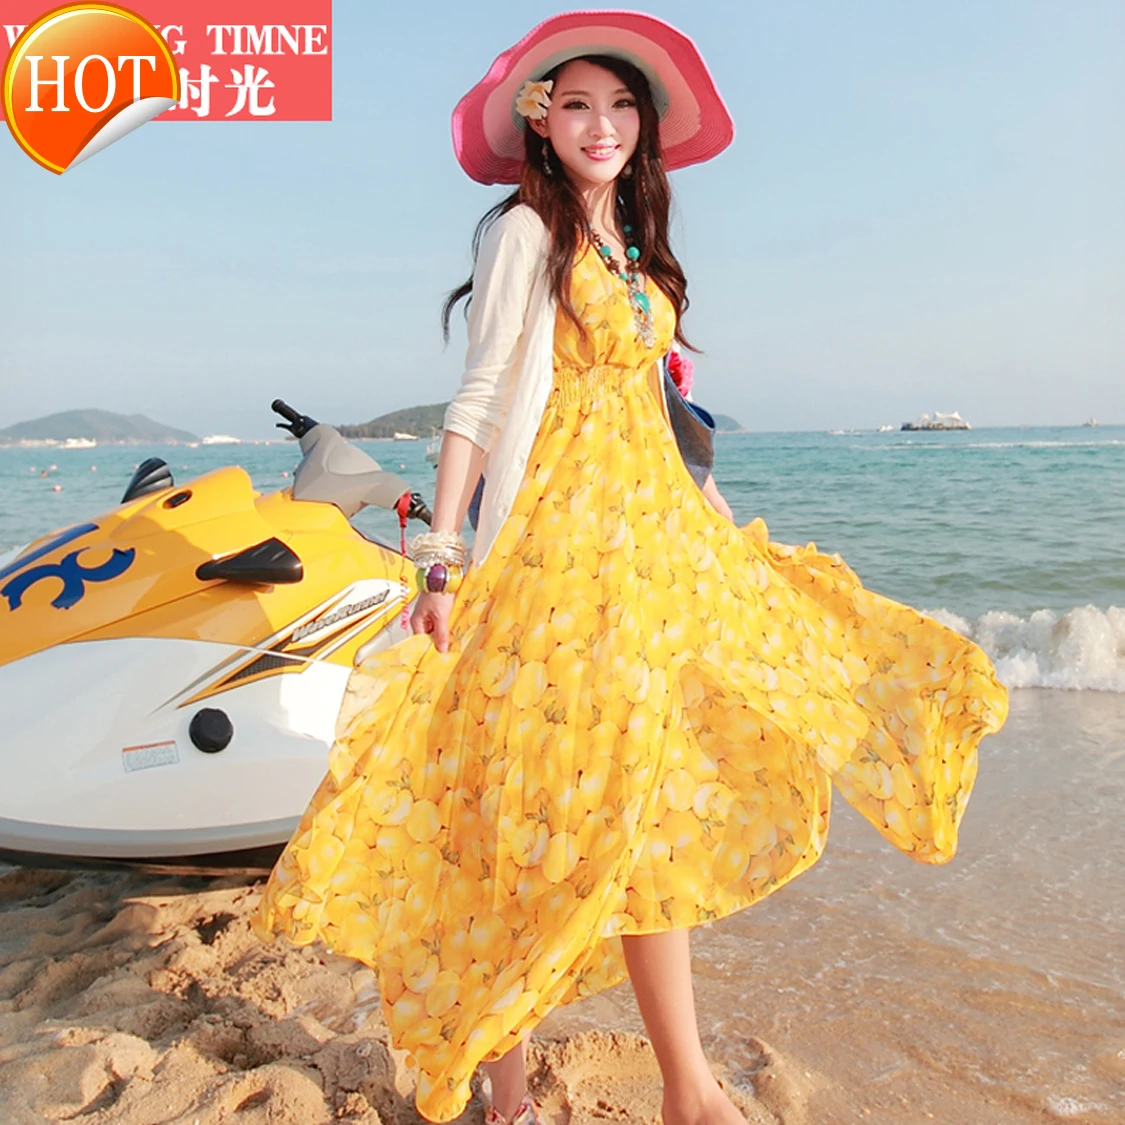 

Beach skirt new Bohemian long skirt summer women's Beach Chiffon Seaside Resort Sanya Tourism dress